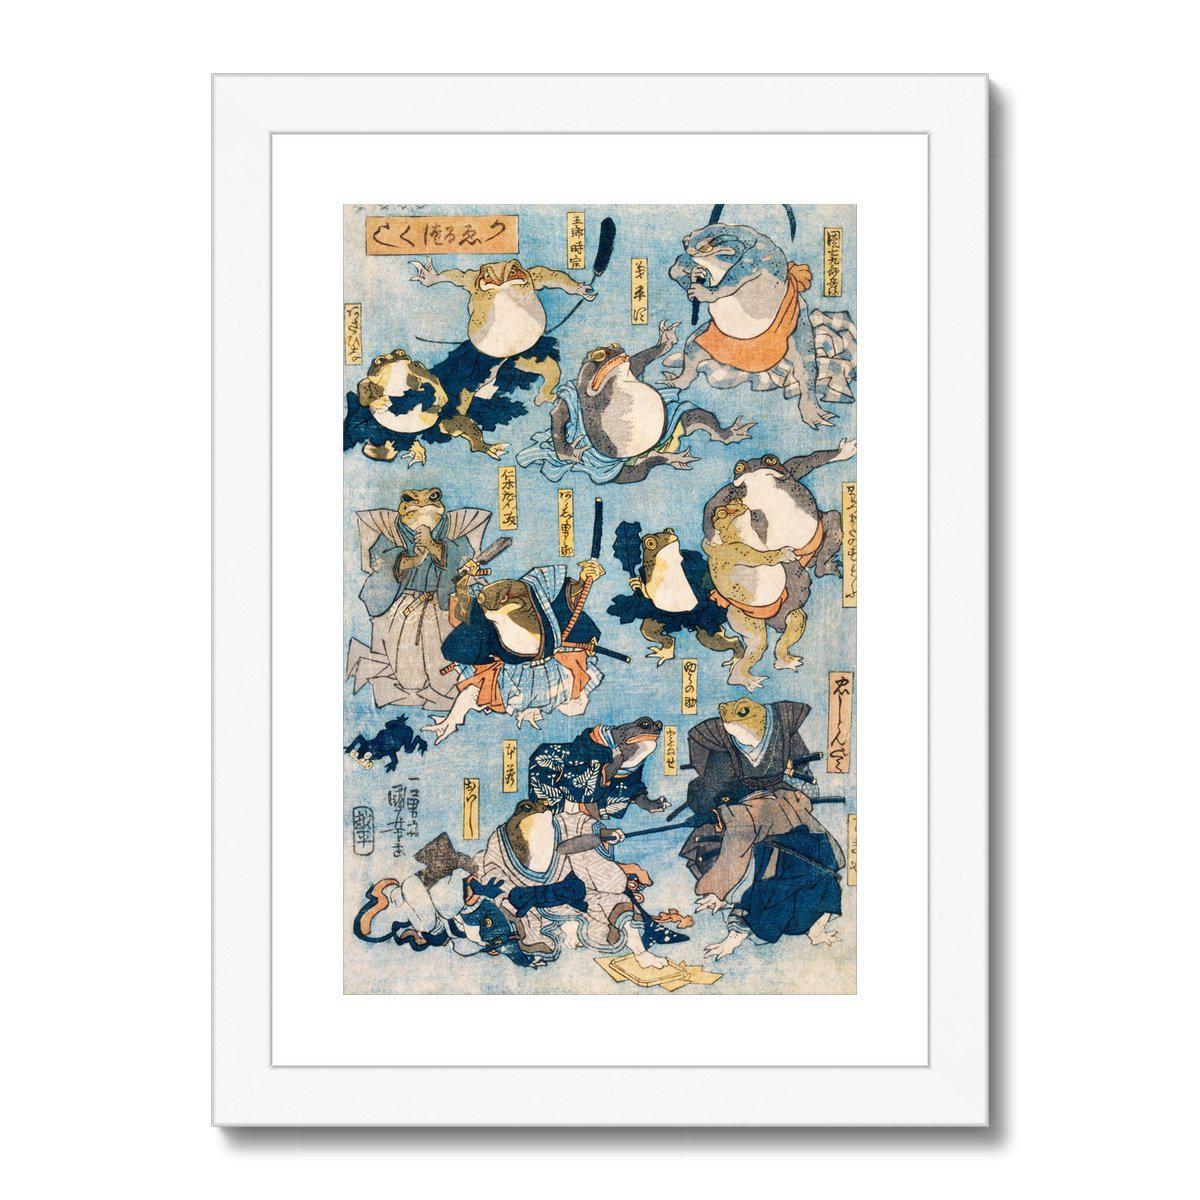 Framed Print 6"x8" / White Frame Utagawa Kuniyoshi: Famous Kabuki Heroes Played by Frogs | Framed Print